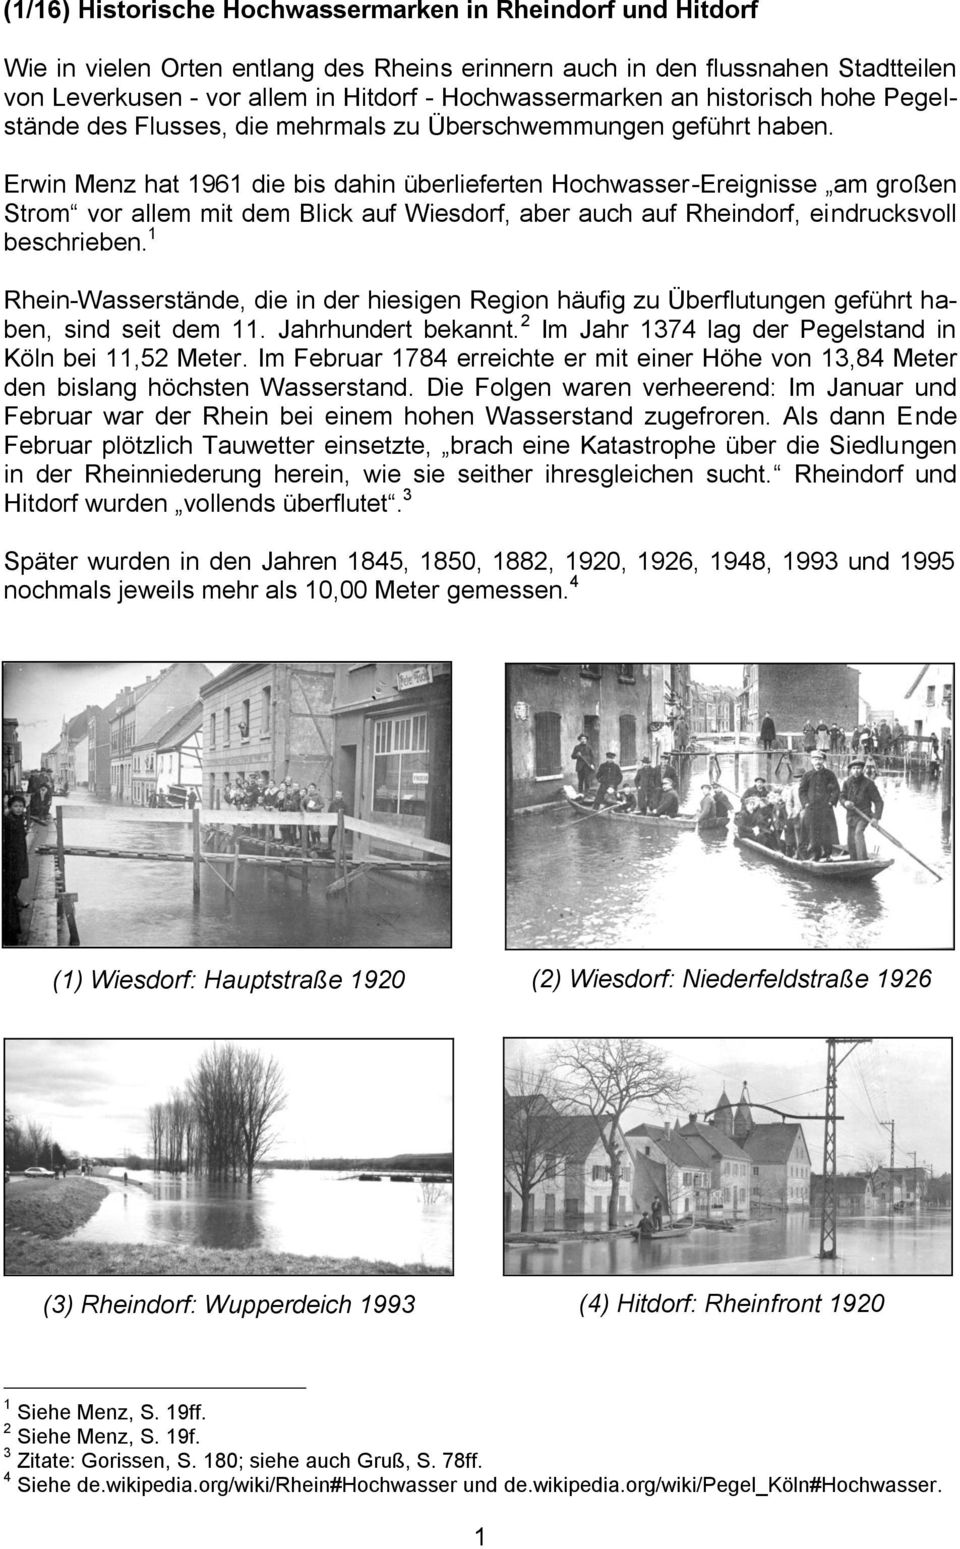 Erwin Menz hat 1961 die bis dahin überlieferten Hochwasser-Ereignisse am großen Strom vor allem mit dem Blick auf Wiesdorf, aber auch auf Rheindorf, eindrucksvoll beschrieben.